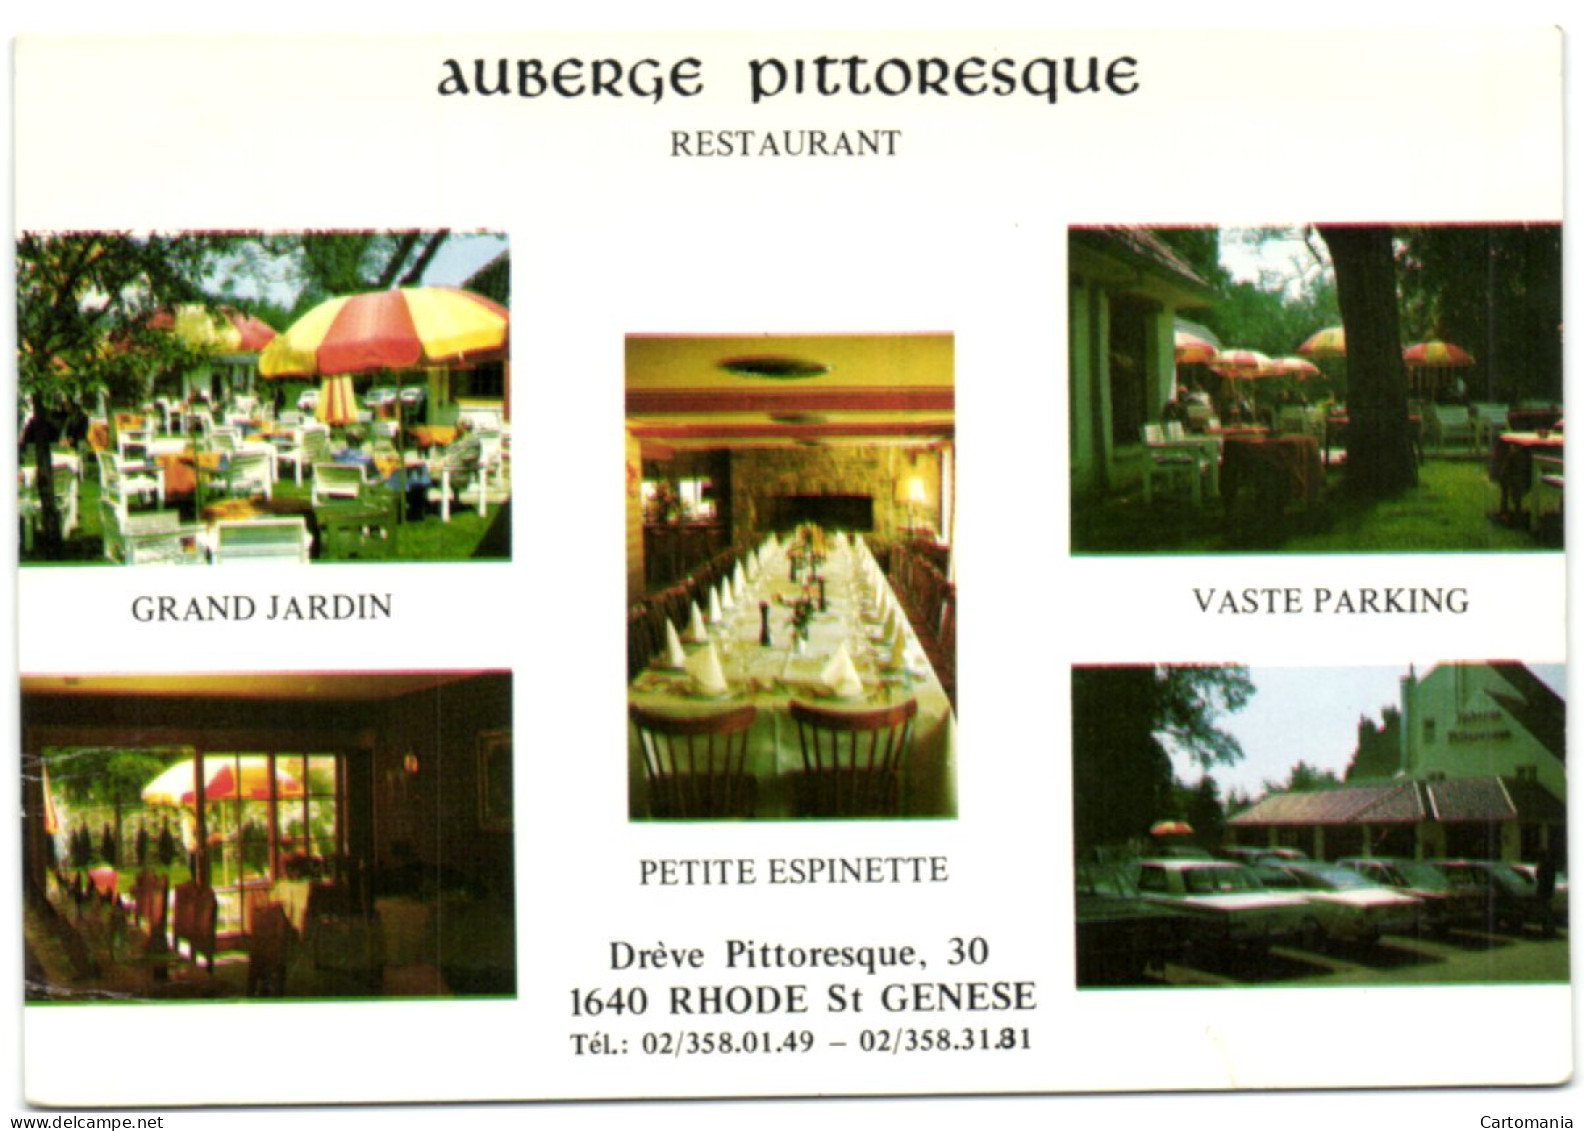 Rhode St Genèse - Auberge Pittoresque - Restaurant - St-Genesius-Rode